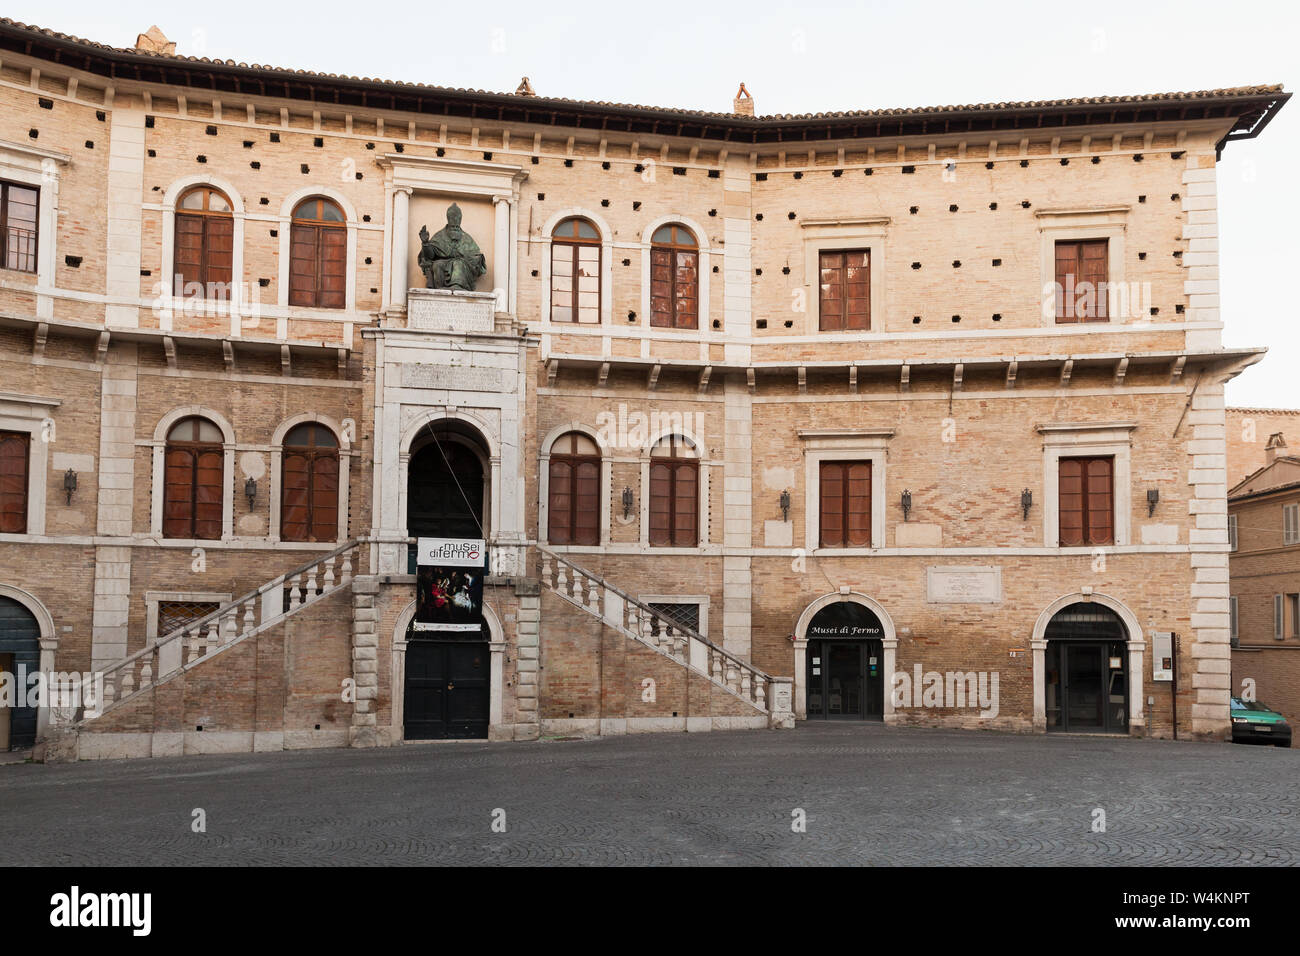 Fermo, Italy - February 8, 2016: Fermo Museum facade, Piazza del Popolo Stock Photo